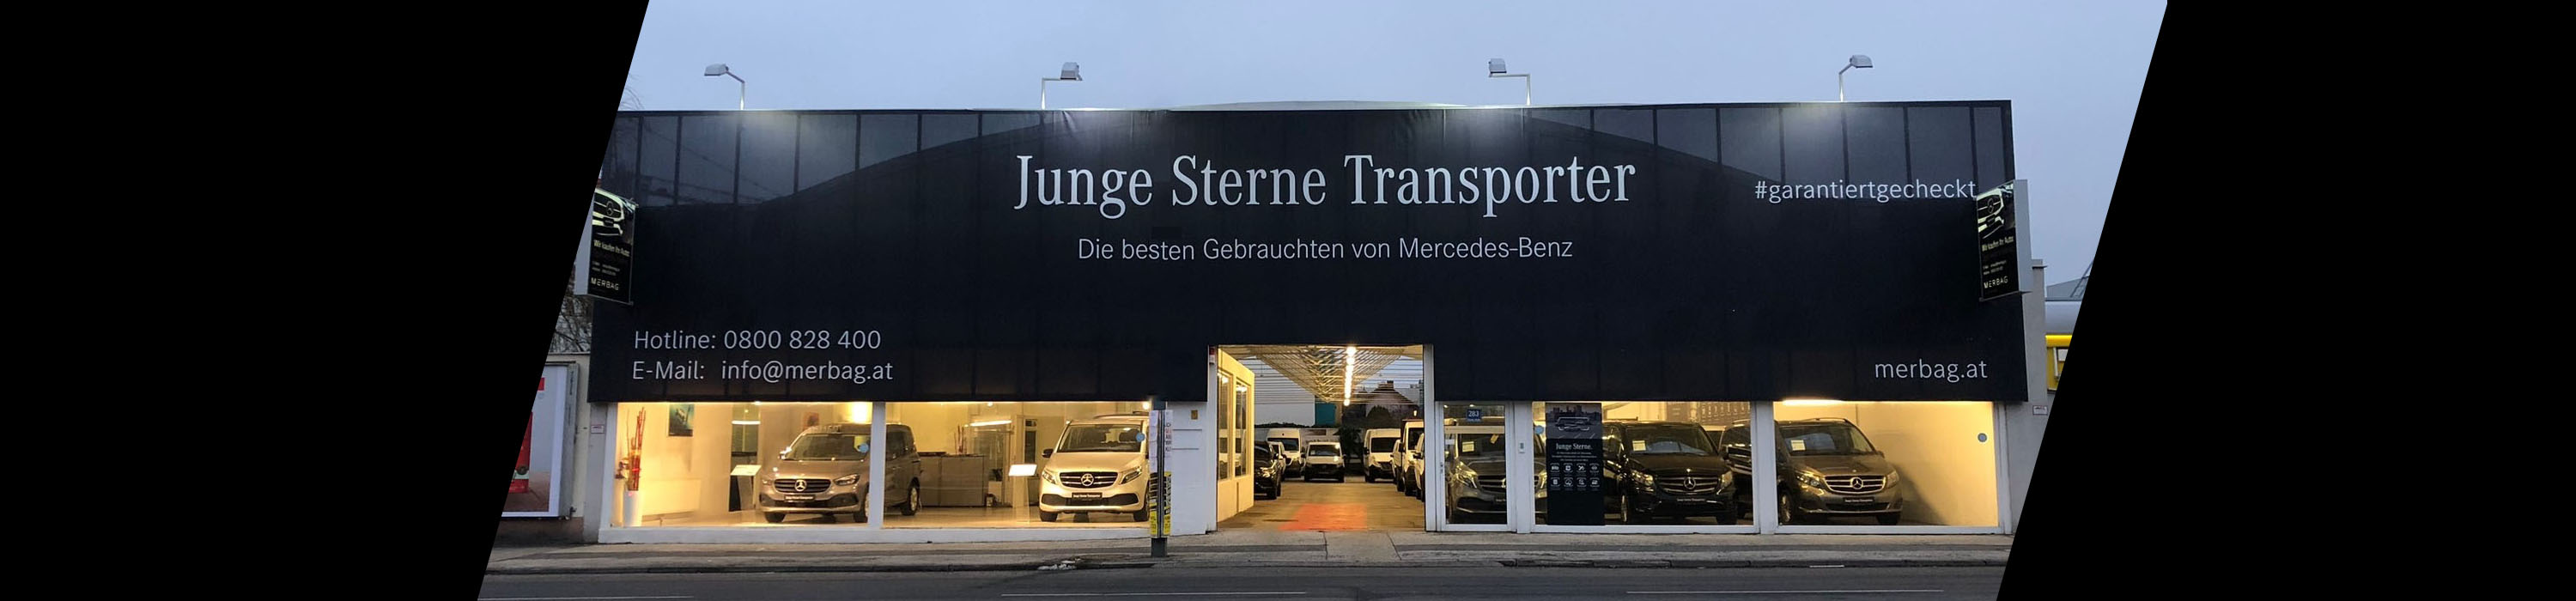 Transporter Gebrauchtwagenaktion bei Merbag, Standort Triesterstraße